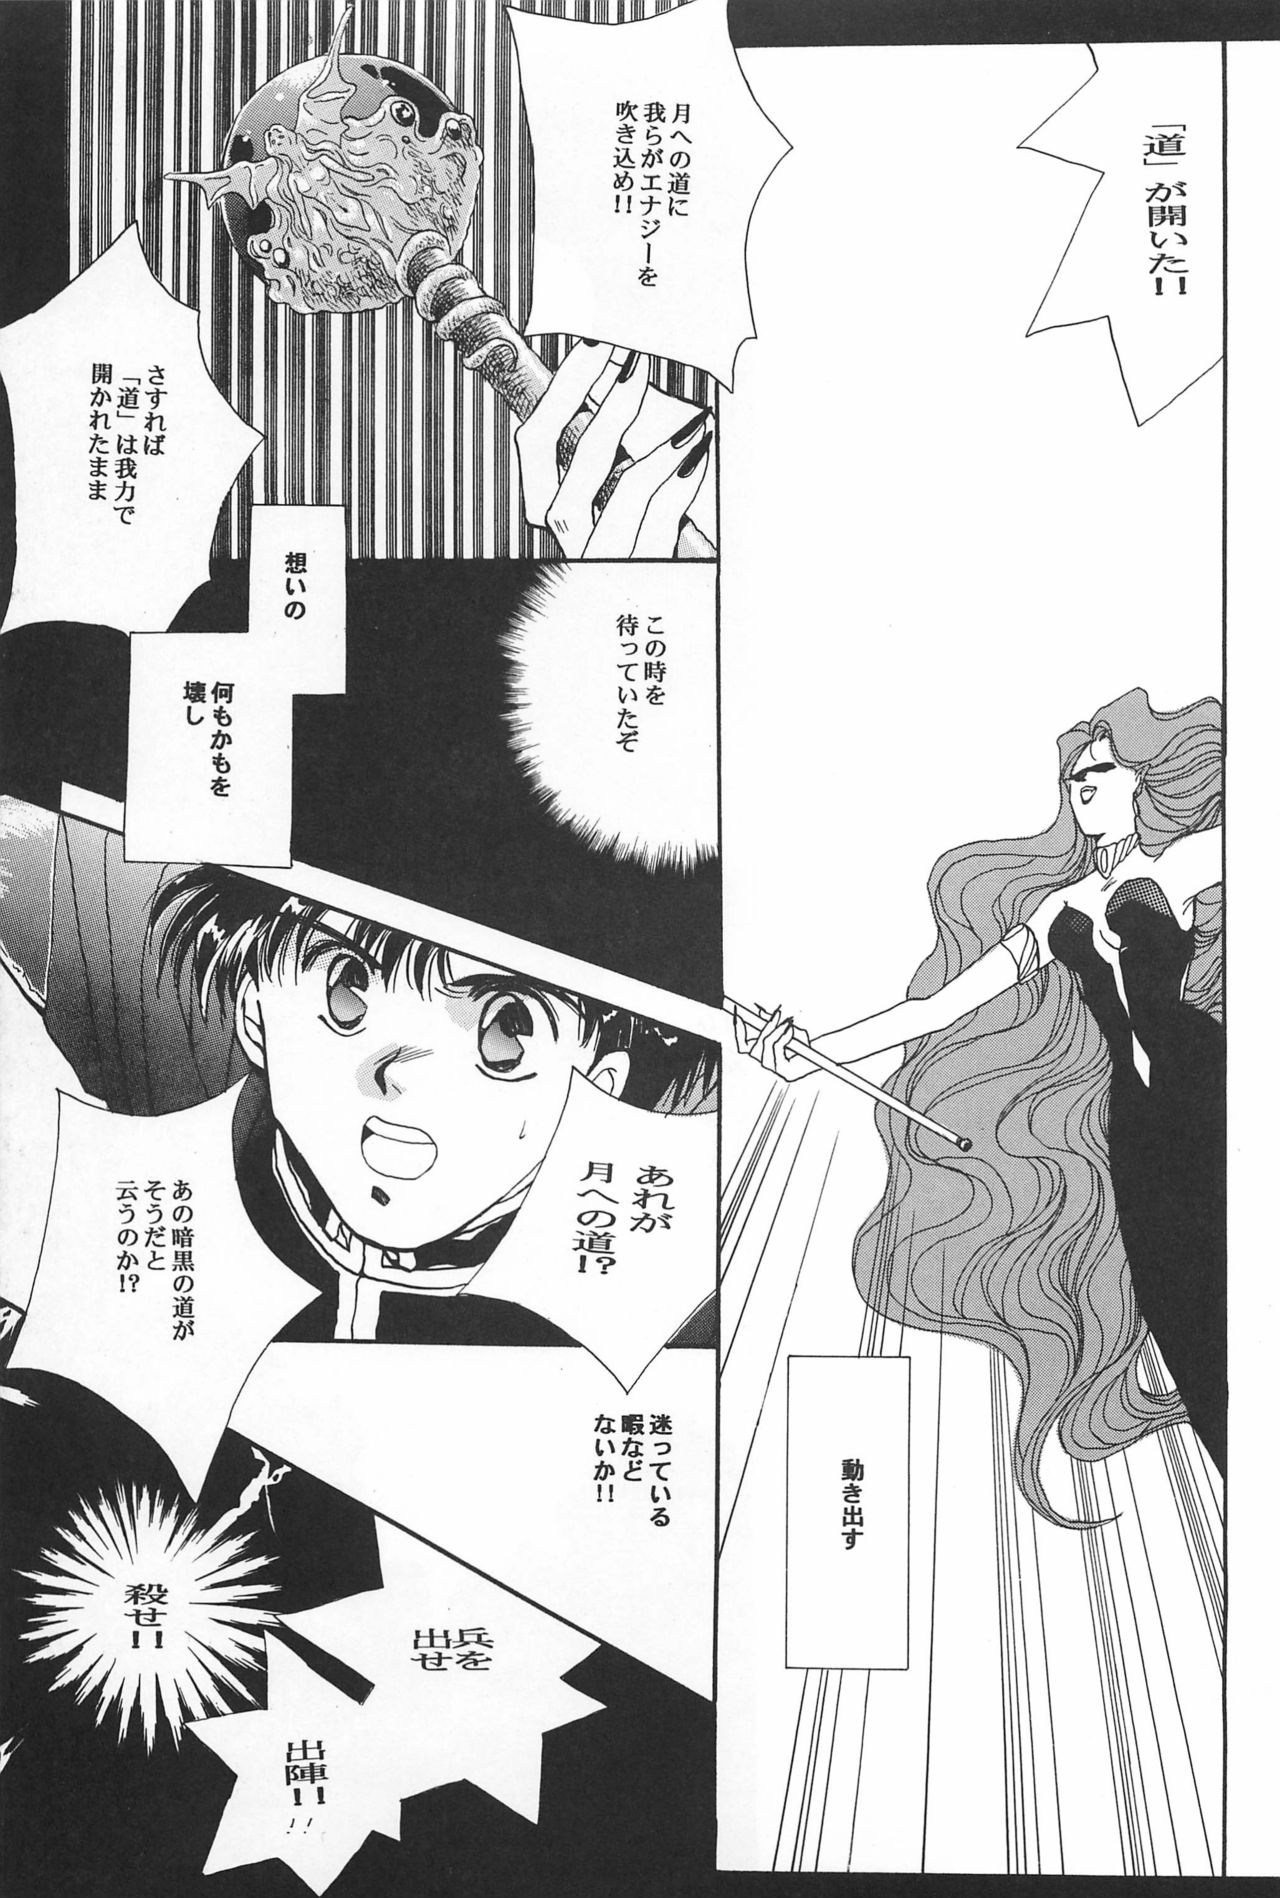 [Hello World (Muttri Moony)] Kaze no You ni Yume no You ni - Sailor Moon Collection (Sailor Moon) 68